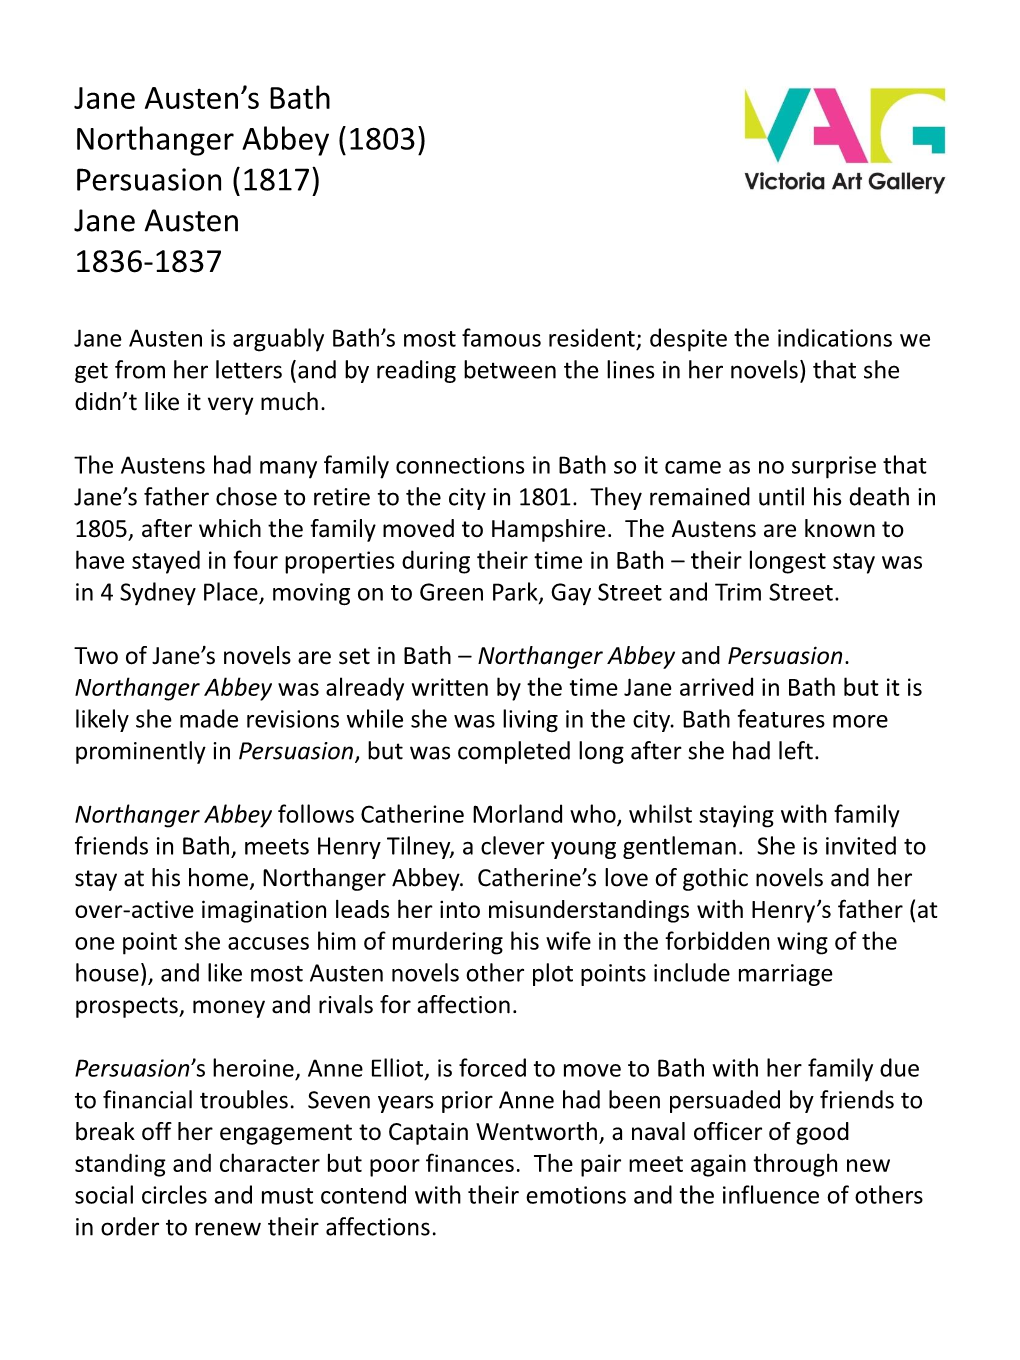 Jane Austen's Bath Northanger Abbey (1803) Persuasion (1817) Jane